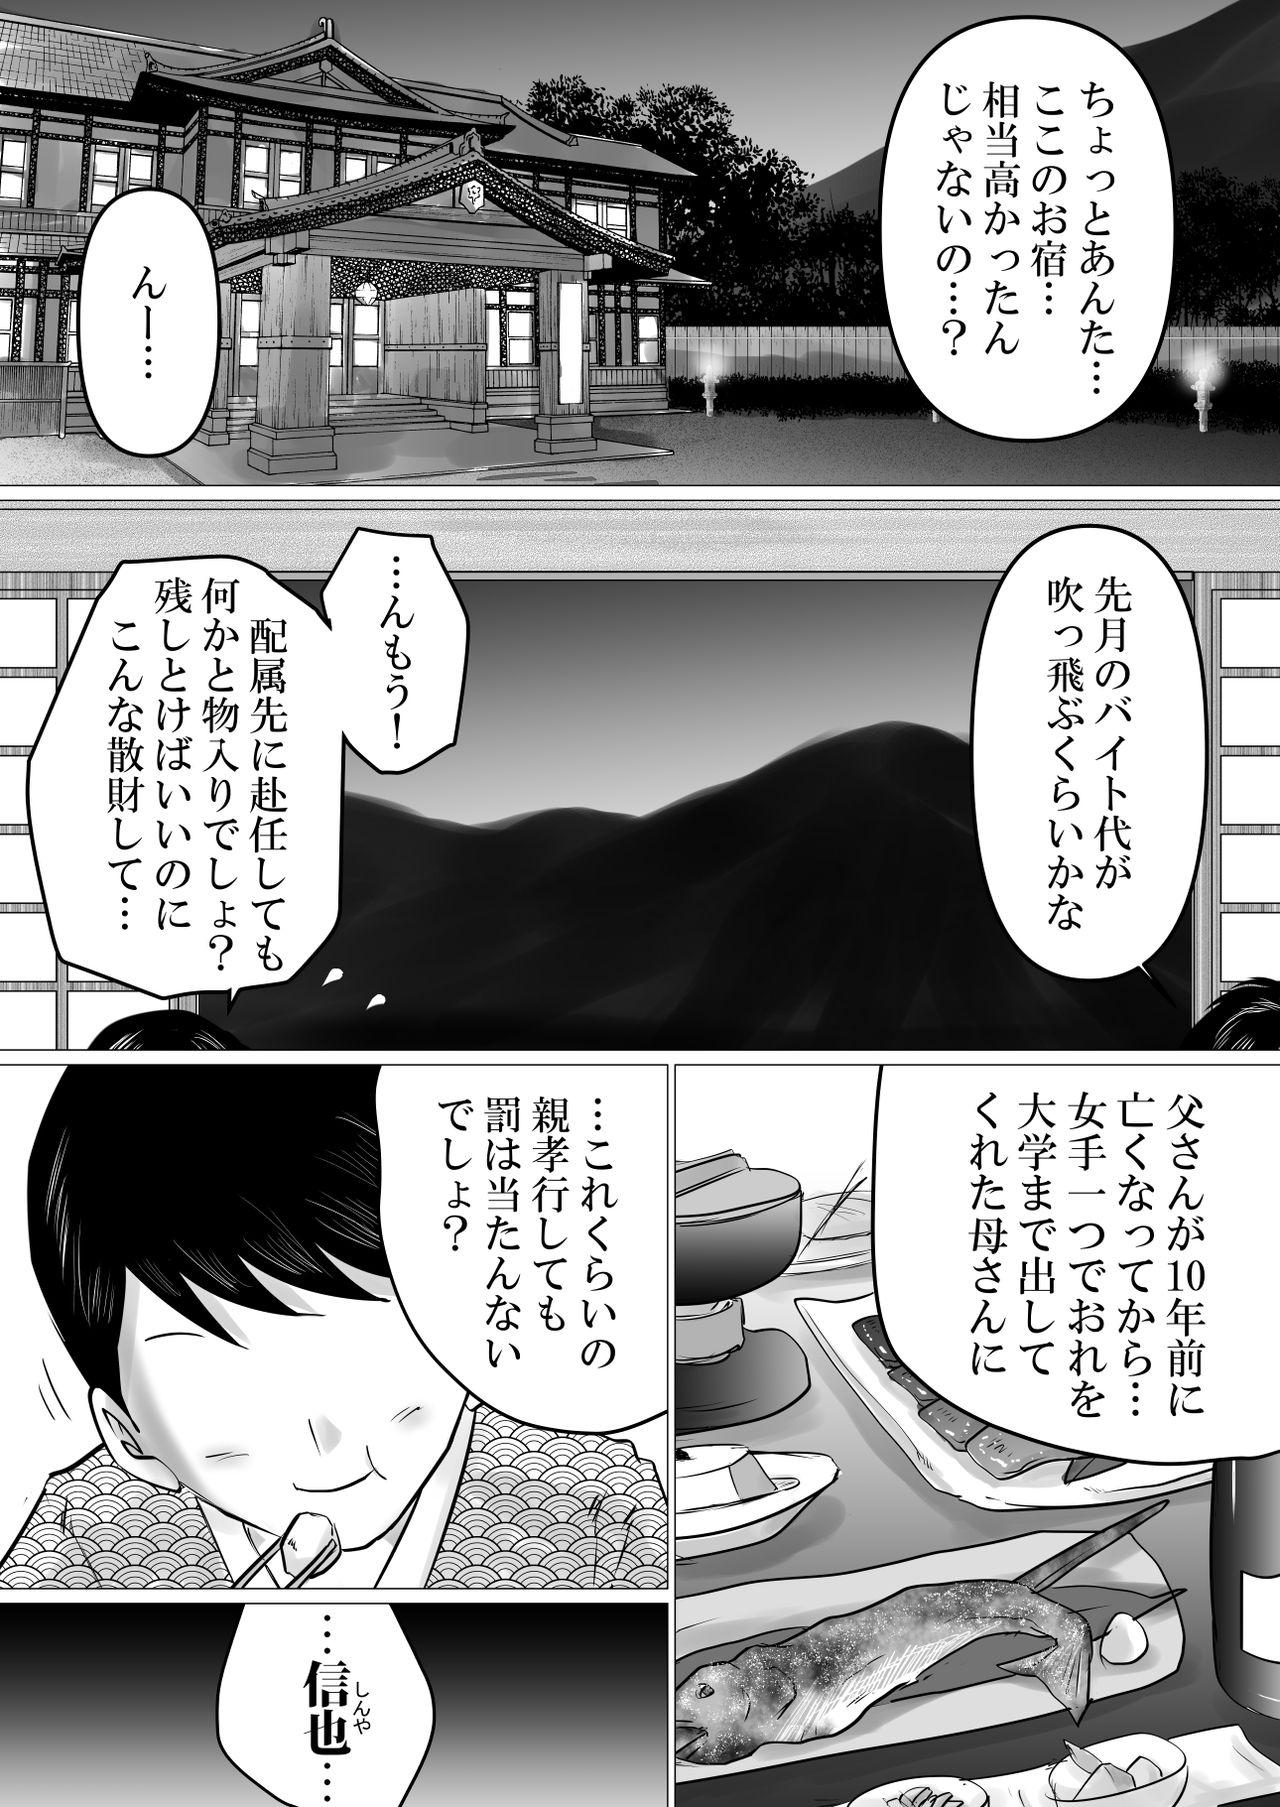 Anal Licking Jukubo to futari de, onsen ryokō. - Original Pickup - Page 2